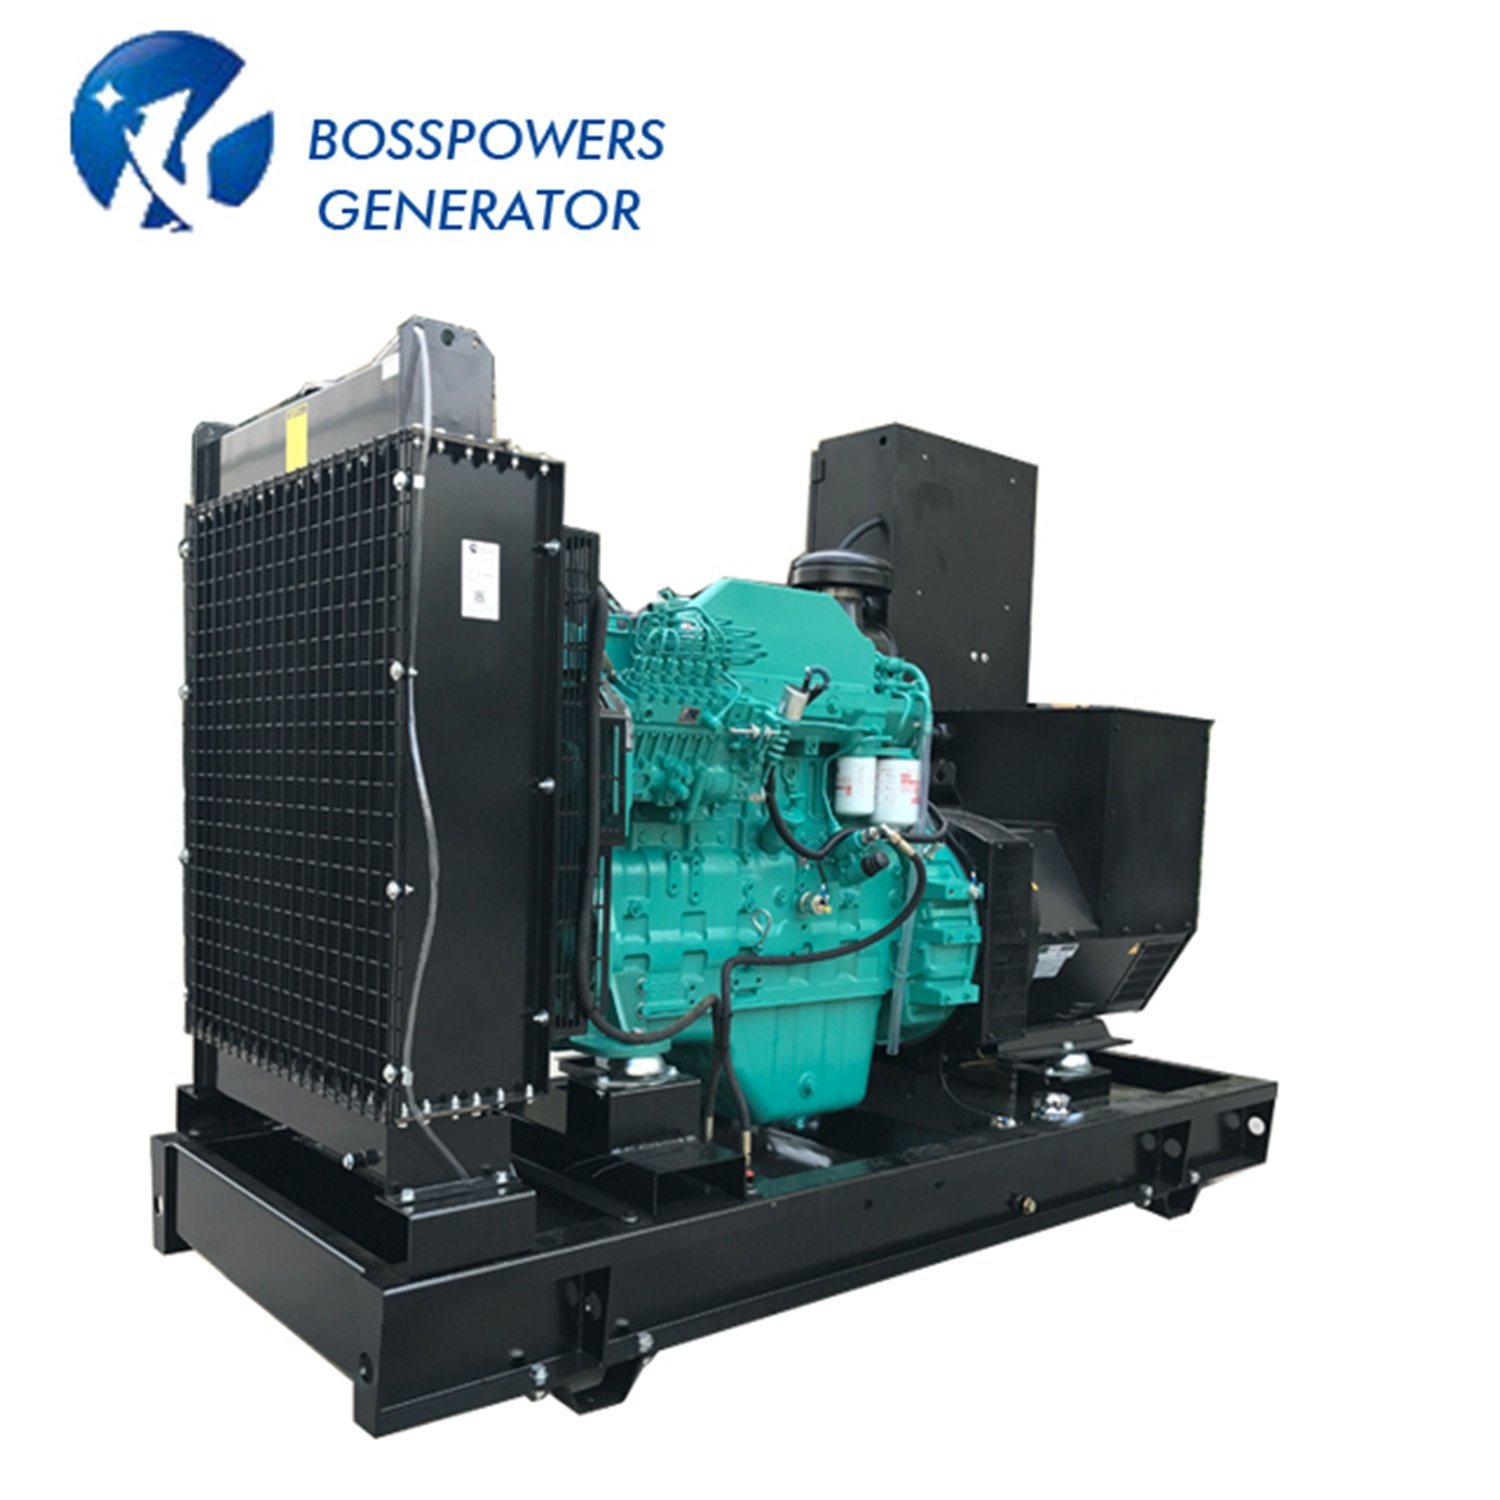 450kVA Prime Power Diesel Generator Powered by Kp441